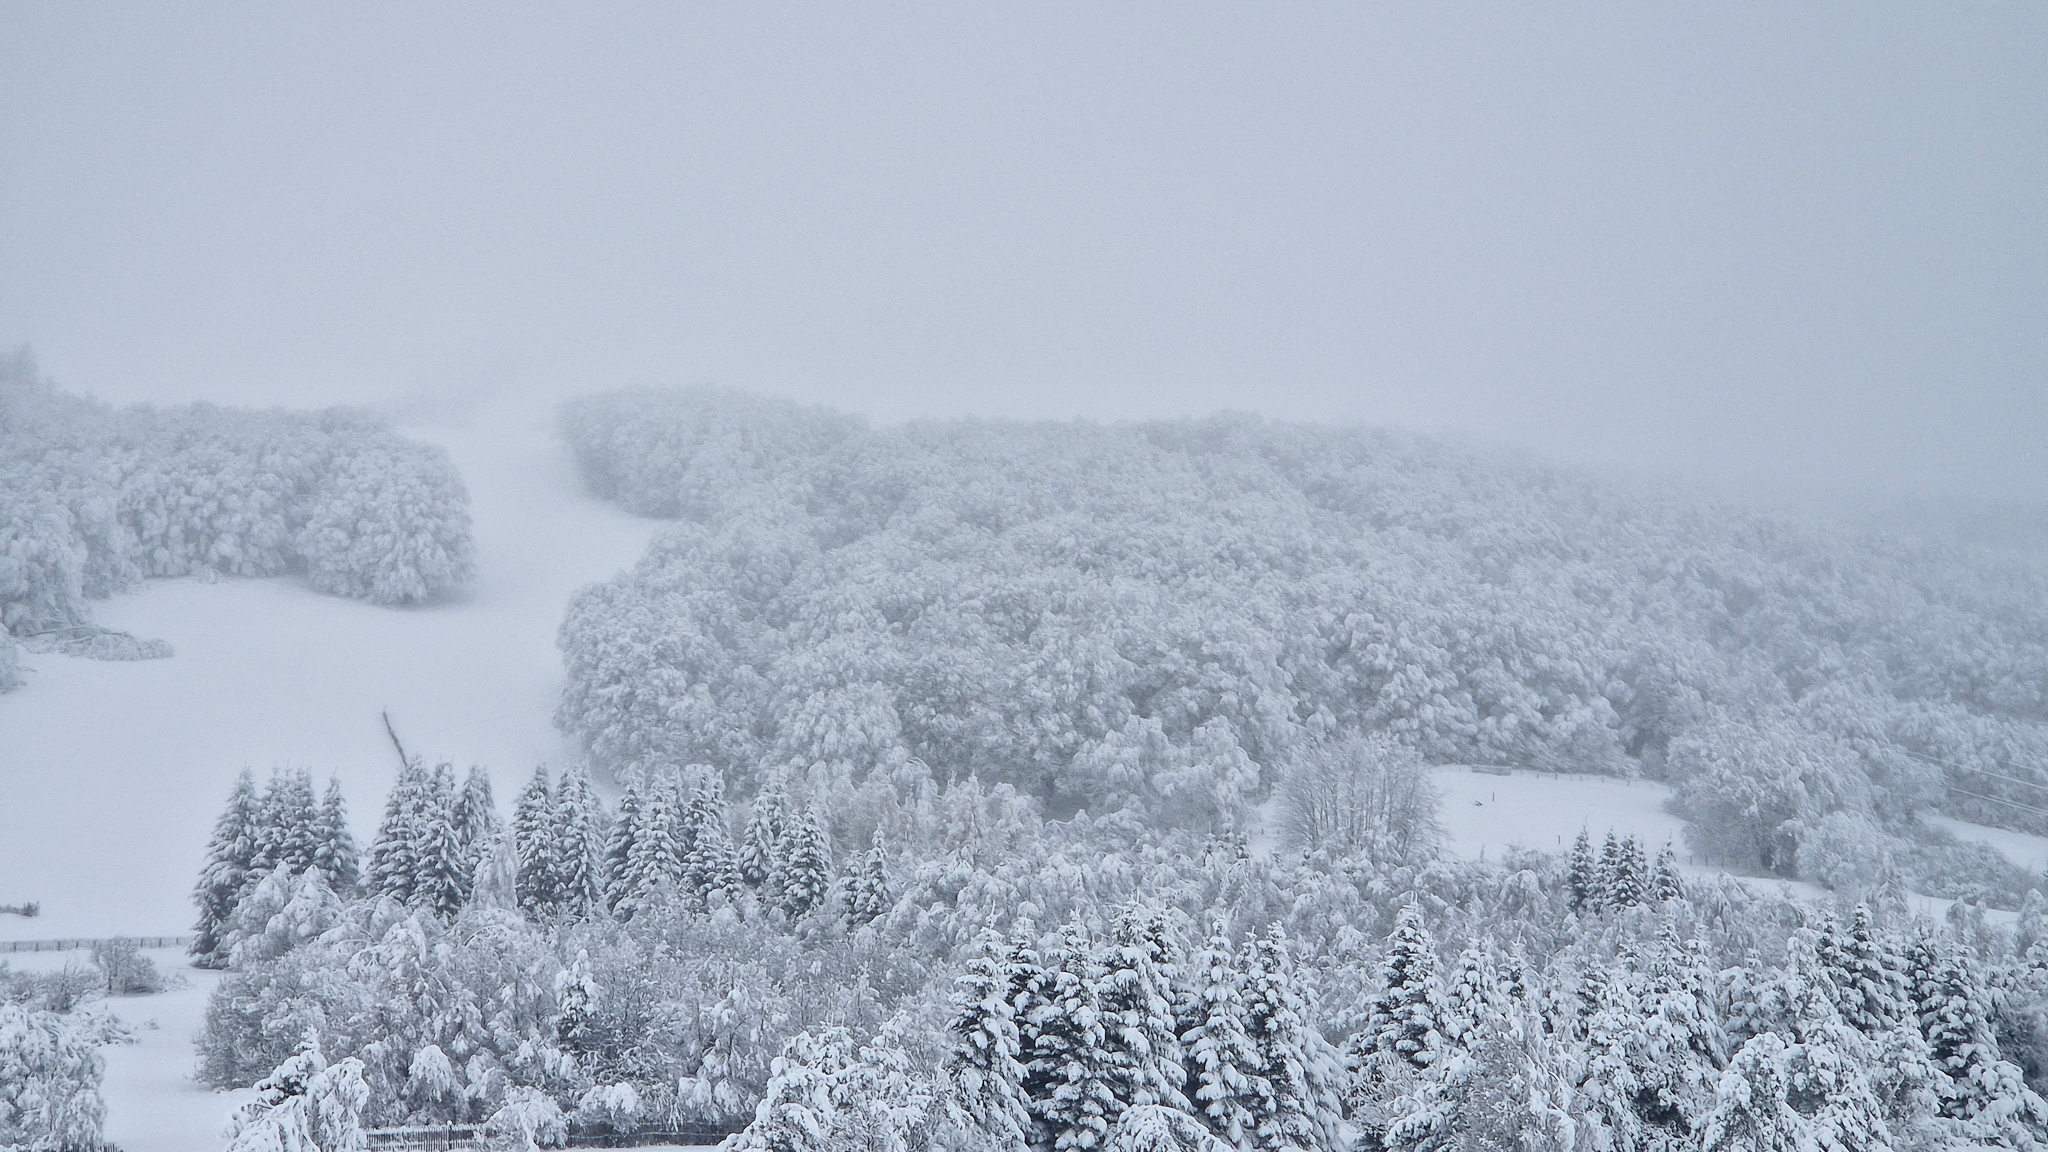 Super besse - premieres neiges sur le Station de ski de Super Besse